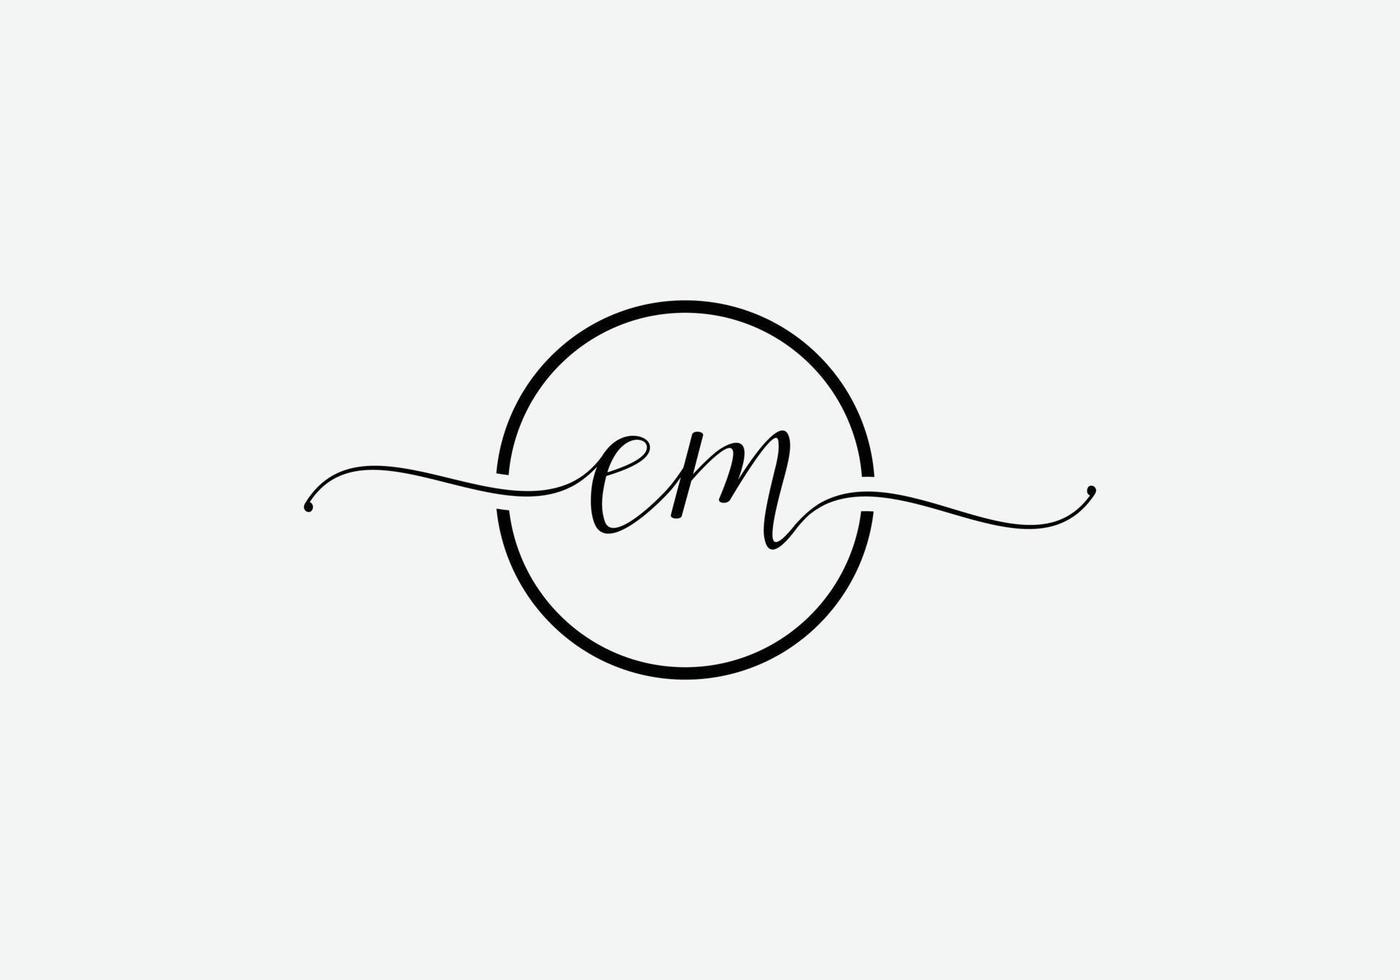 création de logo minimaliste moderne lettre em abstraite vecteur